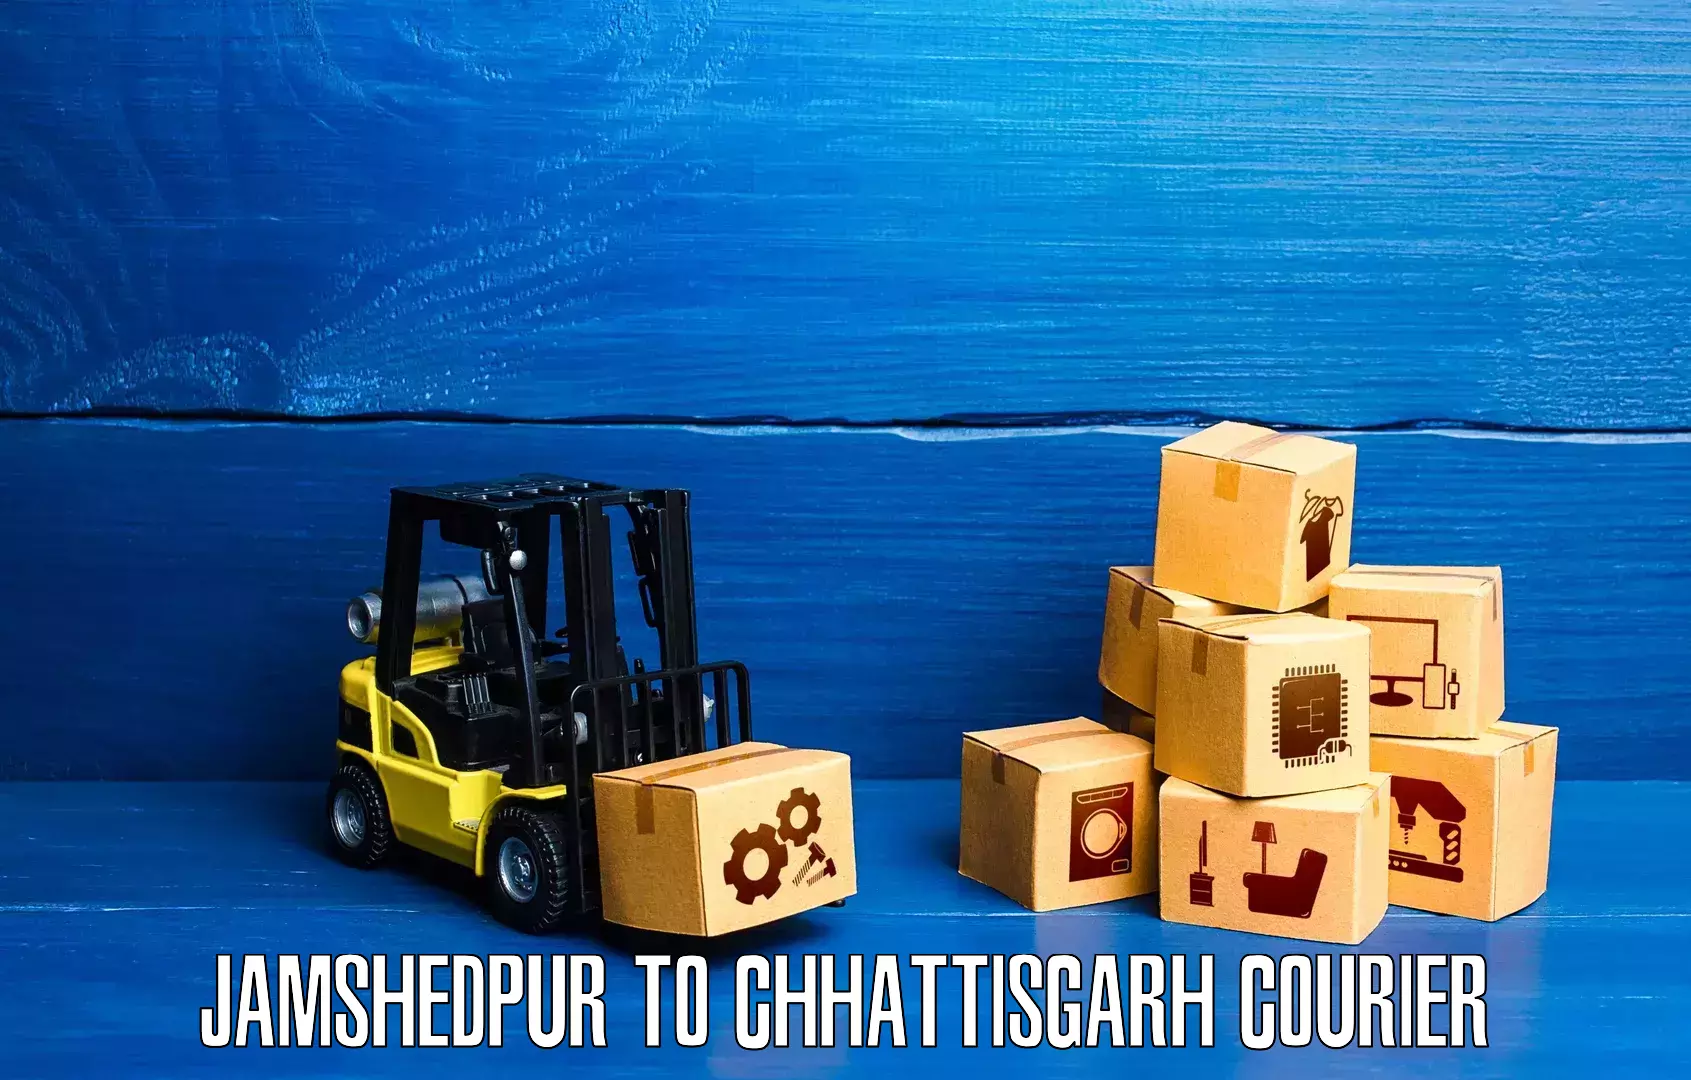 Nationwide courier service Jamshedpur to Bijapur Chhattisgarh